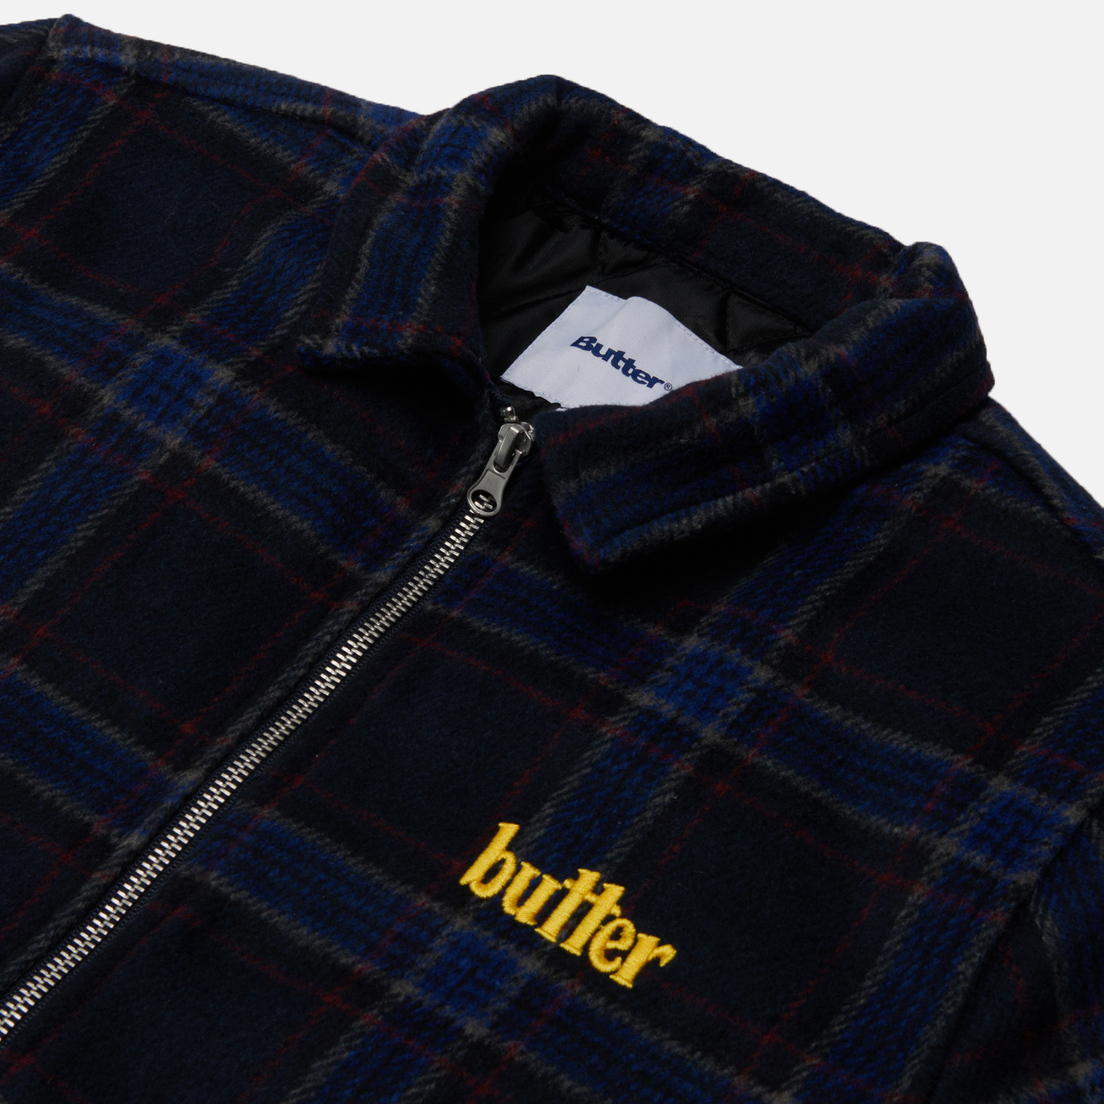 Butter Goods Мужская демисезонная куртка Plaid Flannel Insulated Overshirt